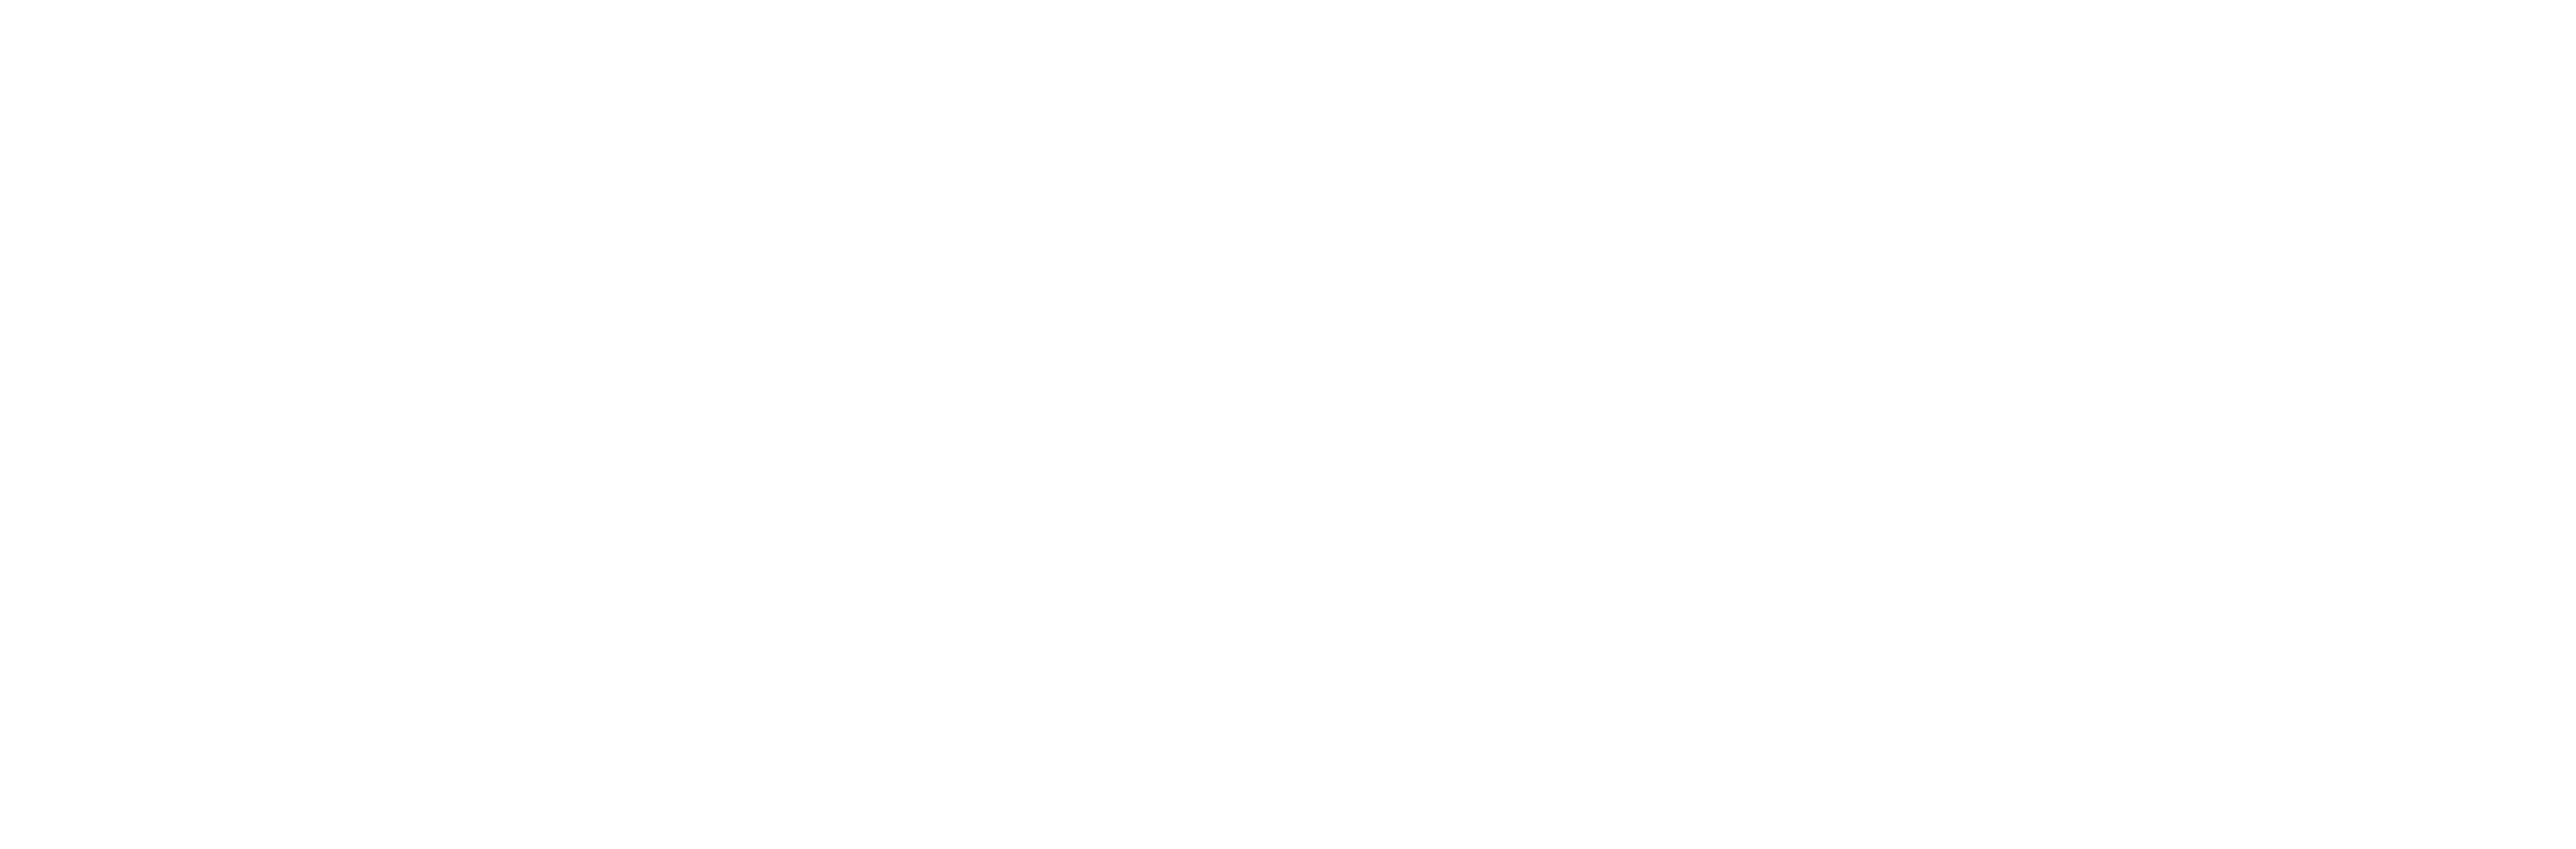 The Sir John Brunner Foundation